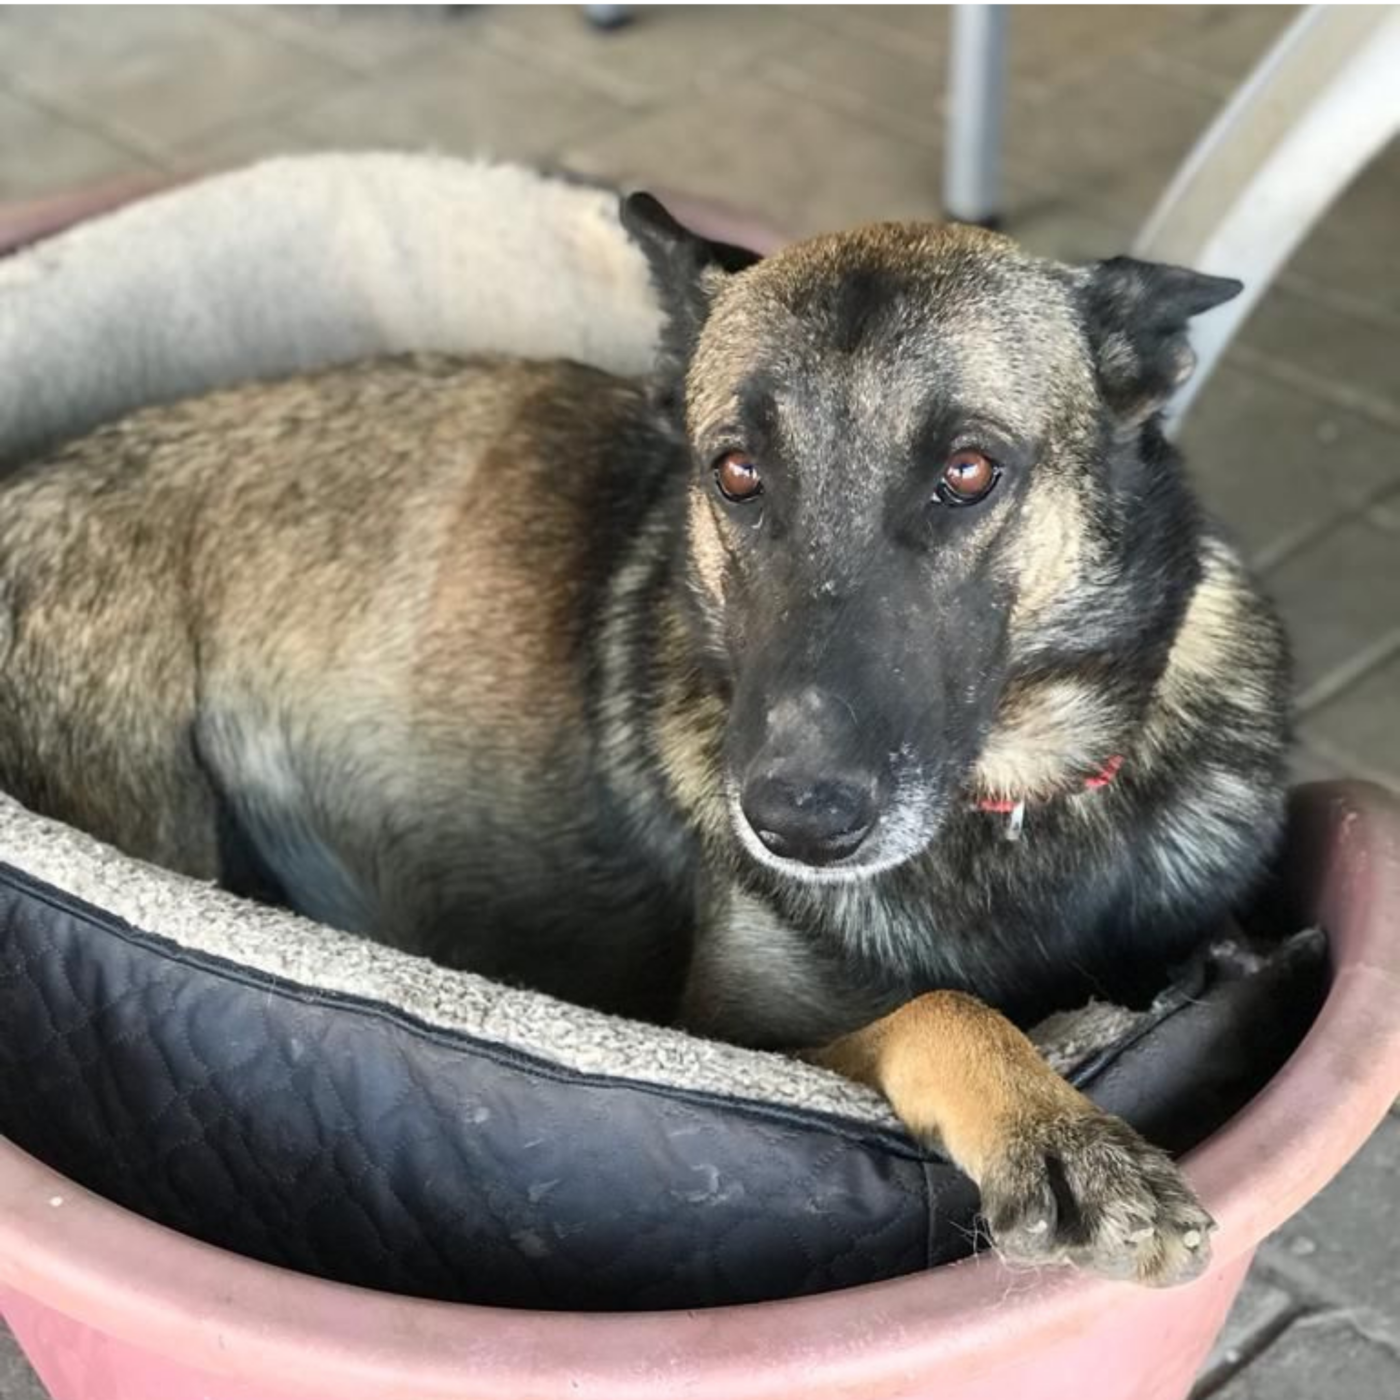 Dog lying in a basket